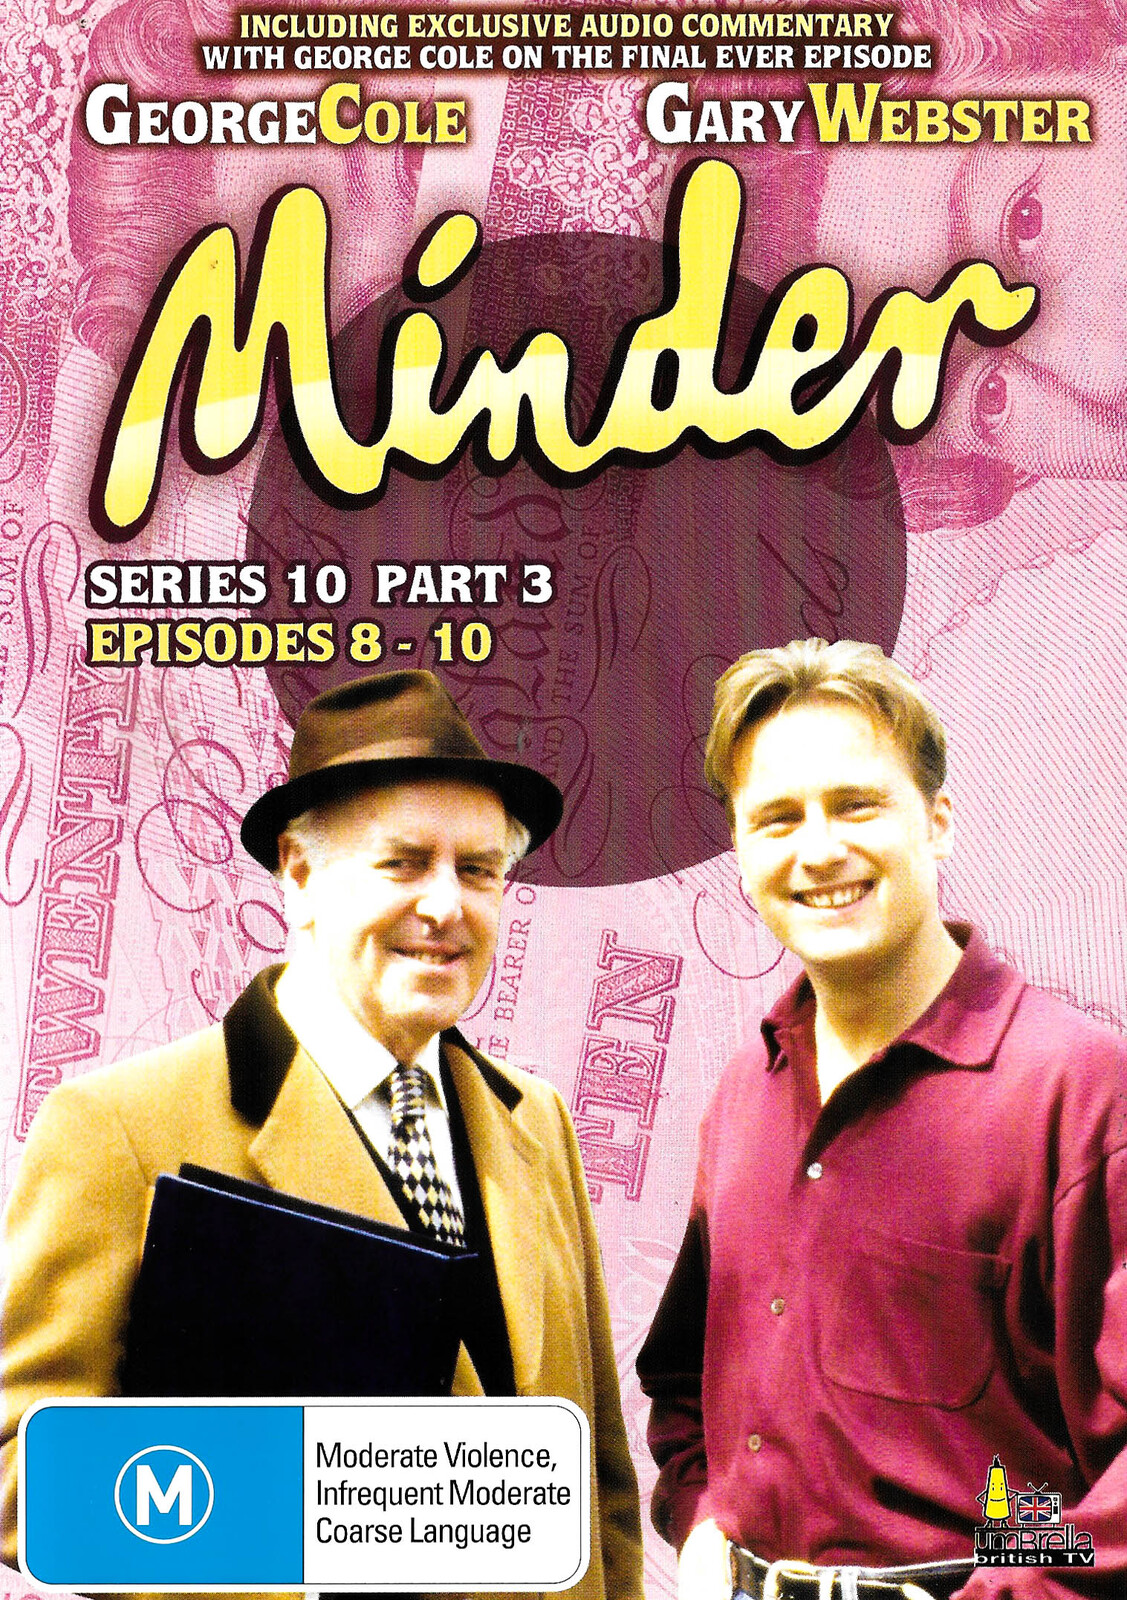 Minder Series 10 Part 3 Episodes 8-10 -DVD Comedy Series Rare Aus Stock | eBay